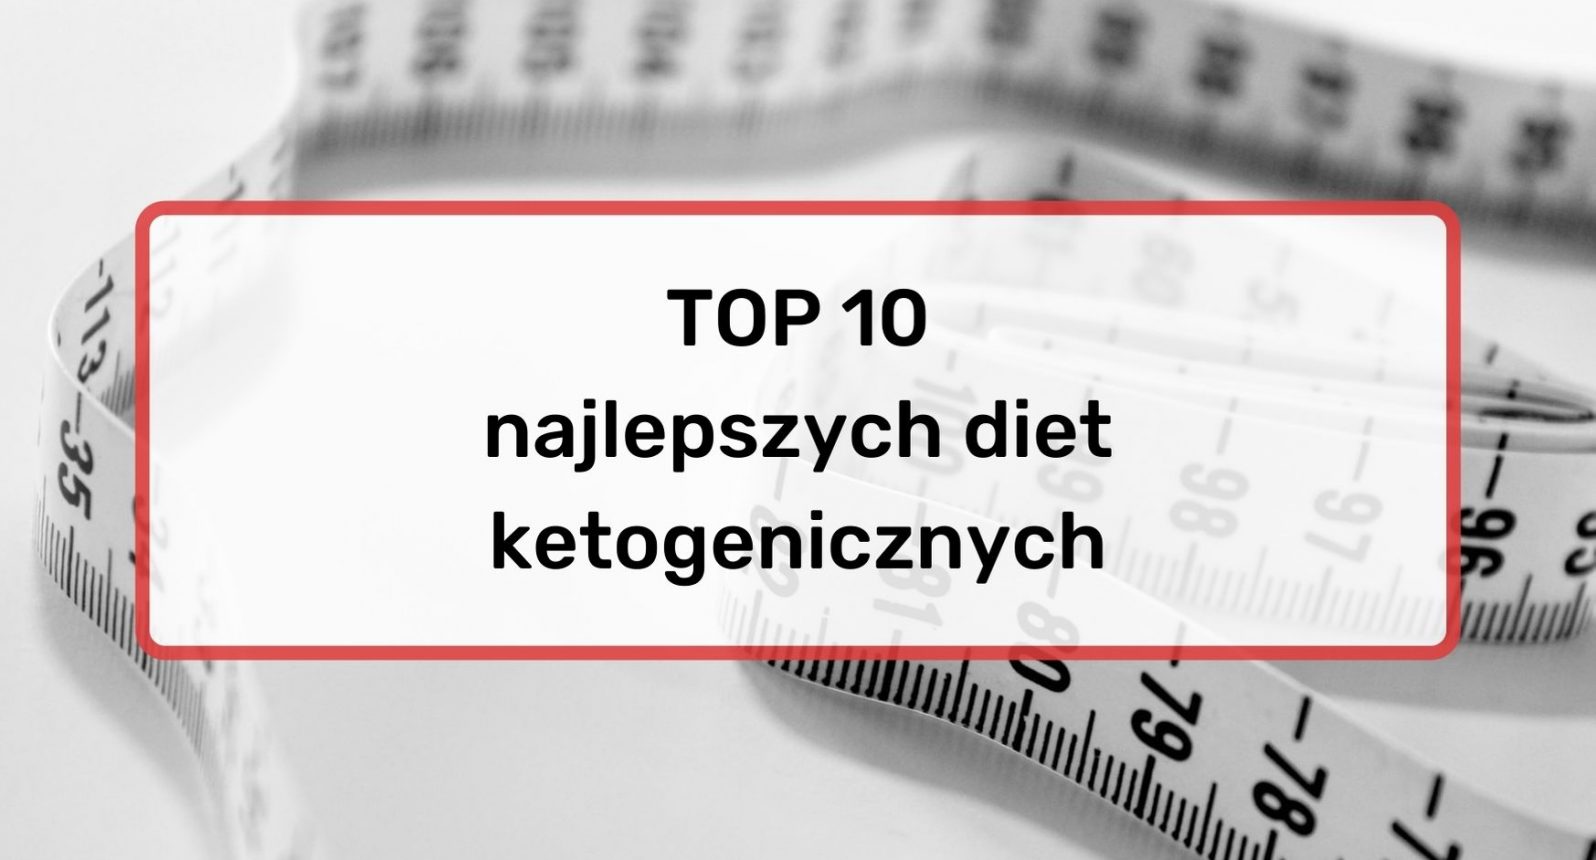 TOP 10 diet ketogenicznych w Polsce